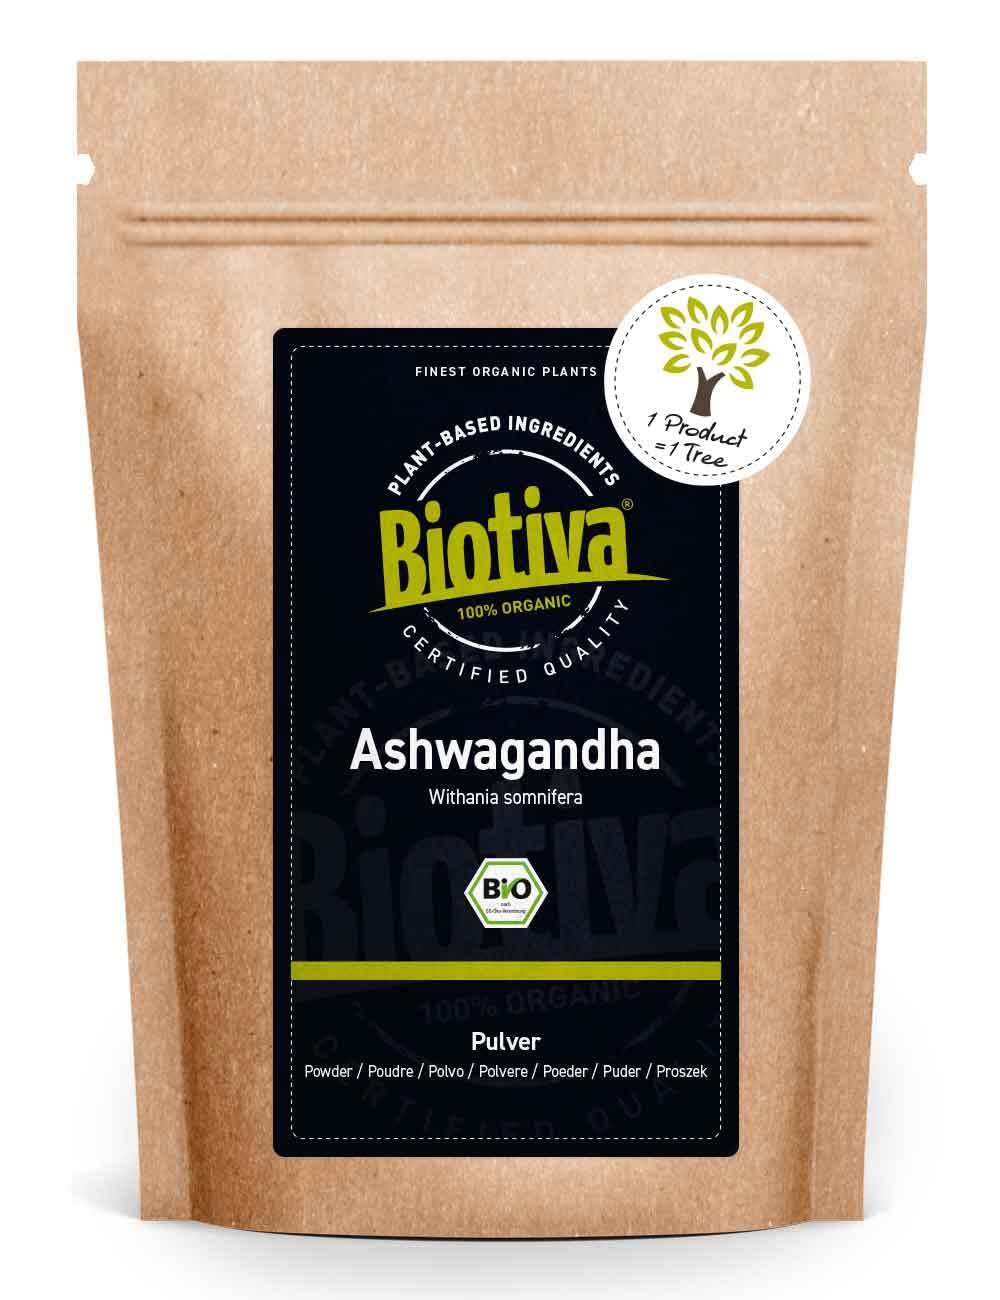 Biotiva Ashwagandha Organic Powder 1000 G - Ashwaganda Root Powder - Sleeping Berry - Ayurveda - Indian Ginseng - Withhania Somnifera - Bottled in Germany (DE -ÖKO -005) - vegan